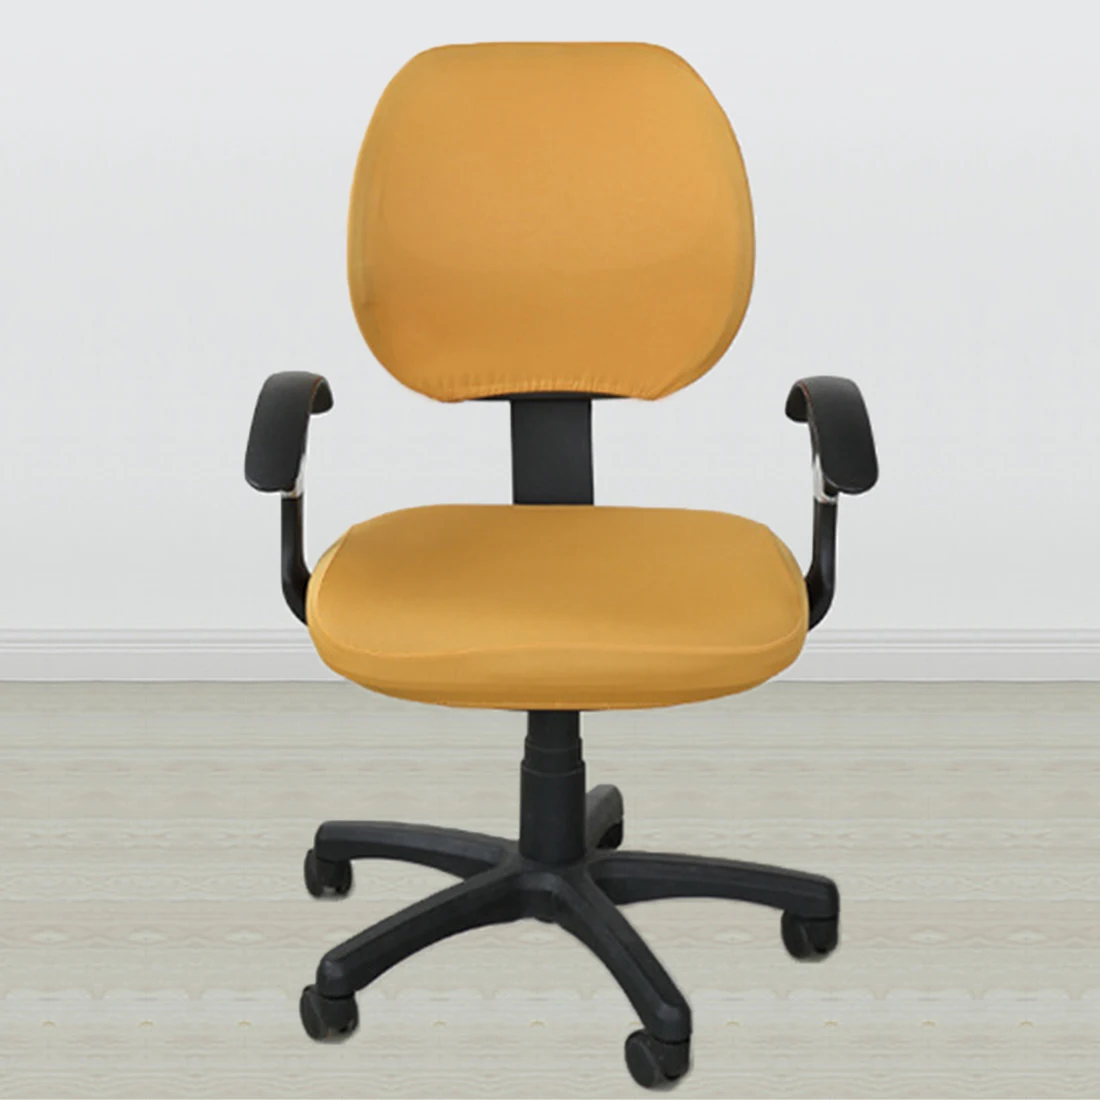 Хорошее качество эластичная ткань спандекс чехлы на сиденья для компьютерных стульев офисное кресло игровое кресло легко моющееся съемное - Цвет: orange